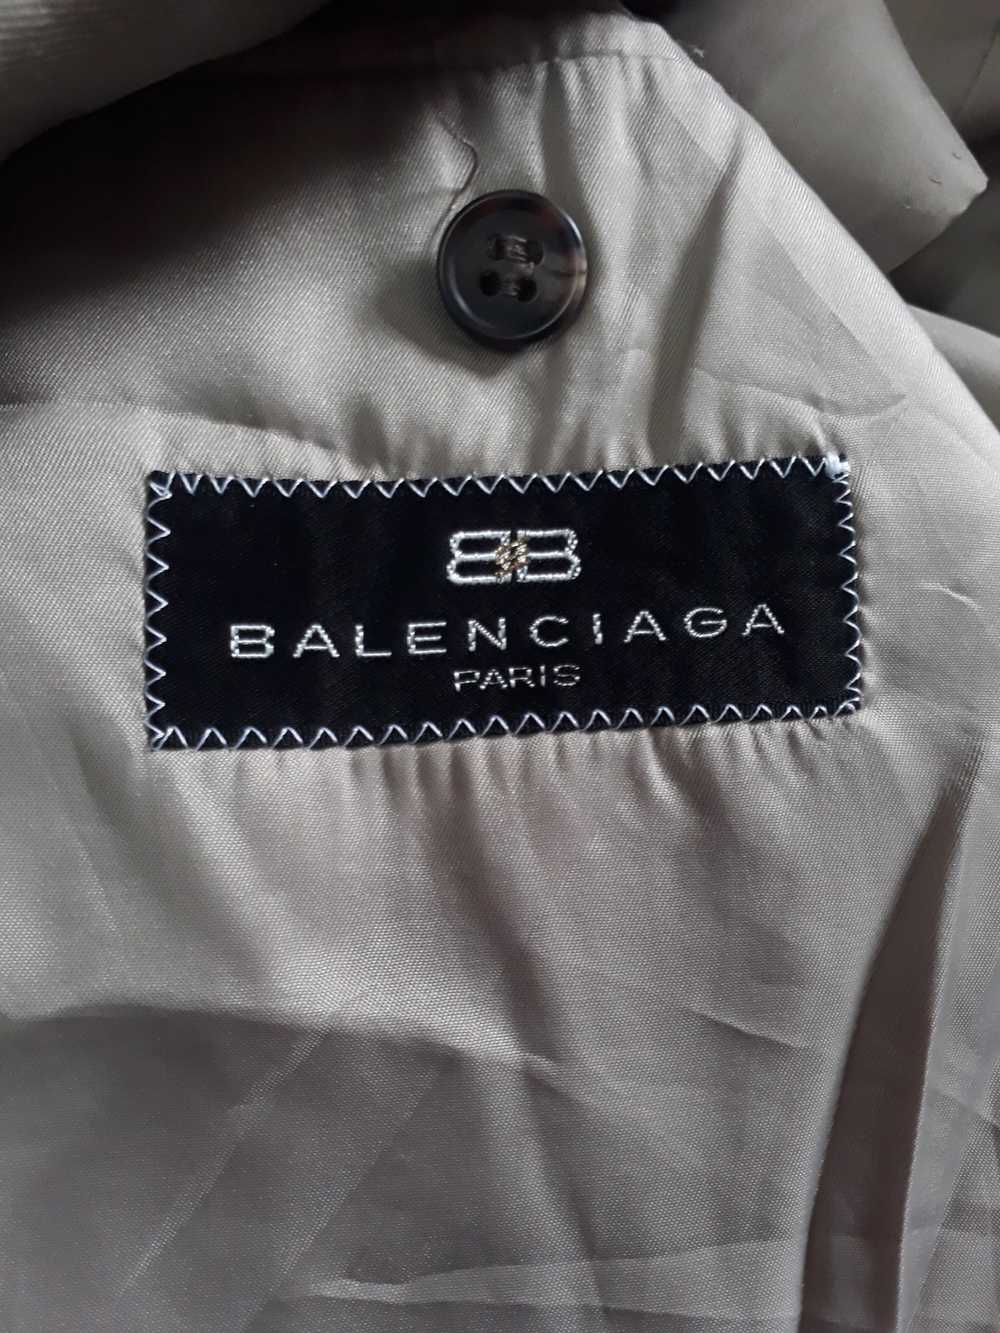 Balenciaga Balenciaga - image 8